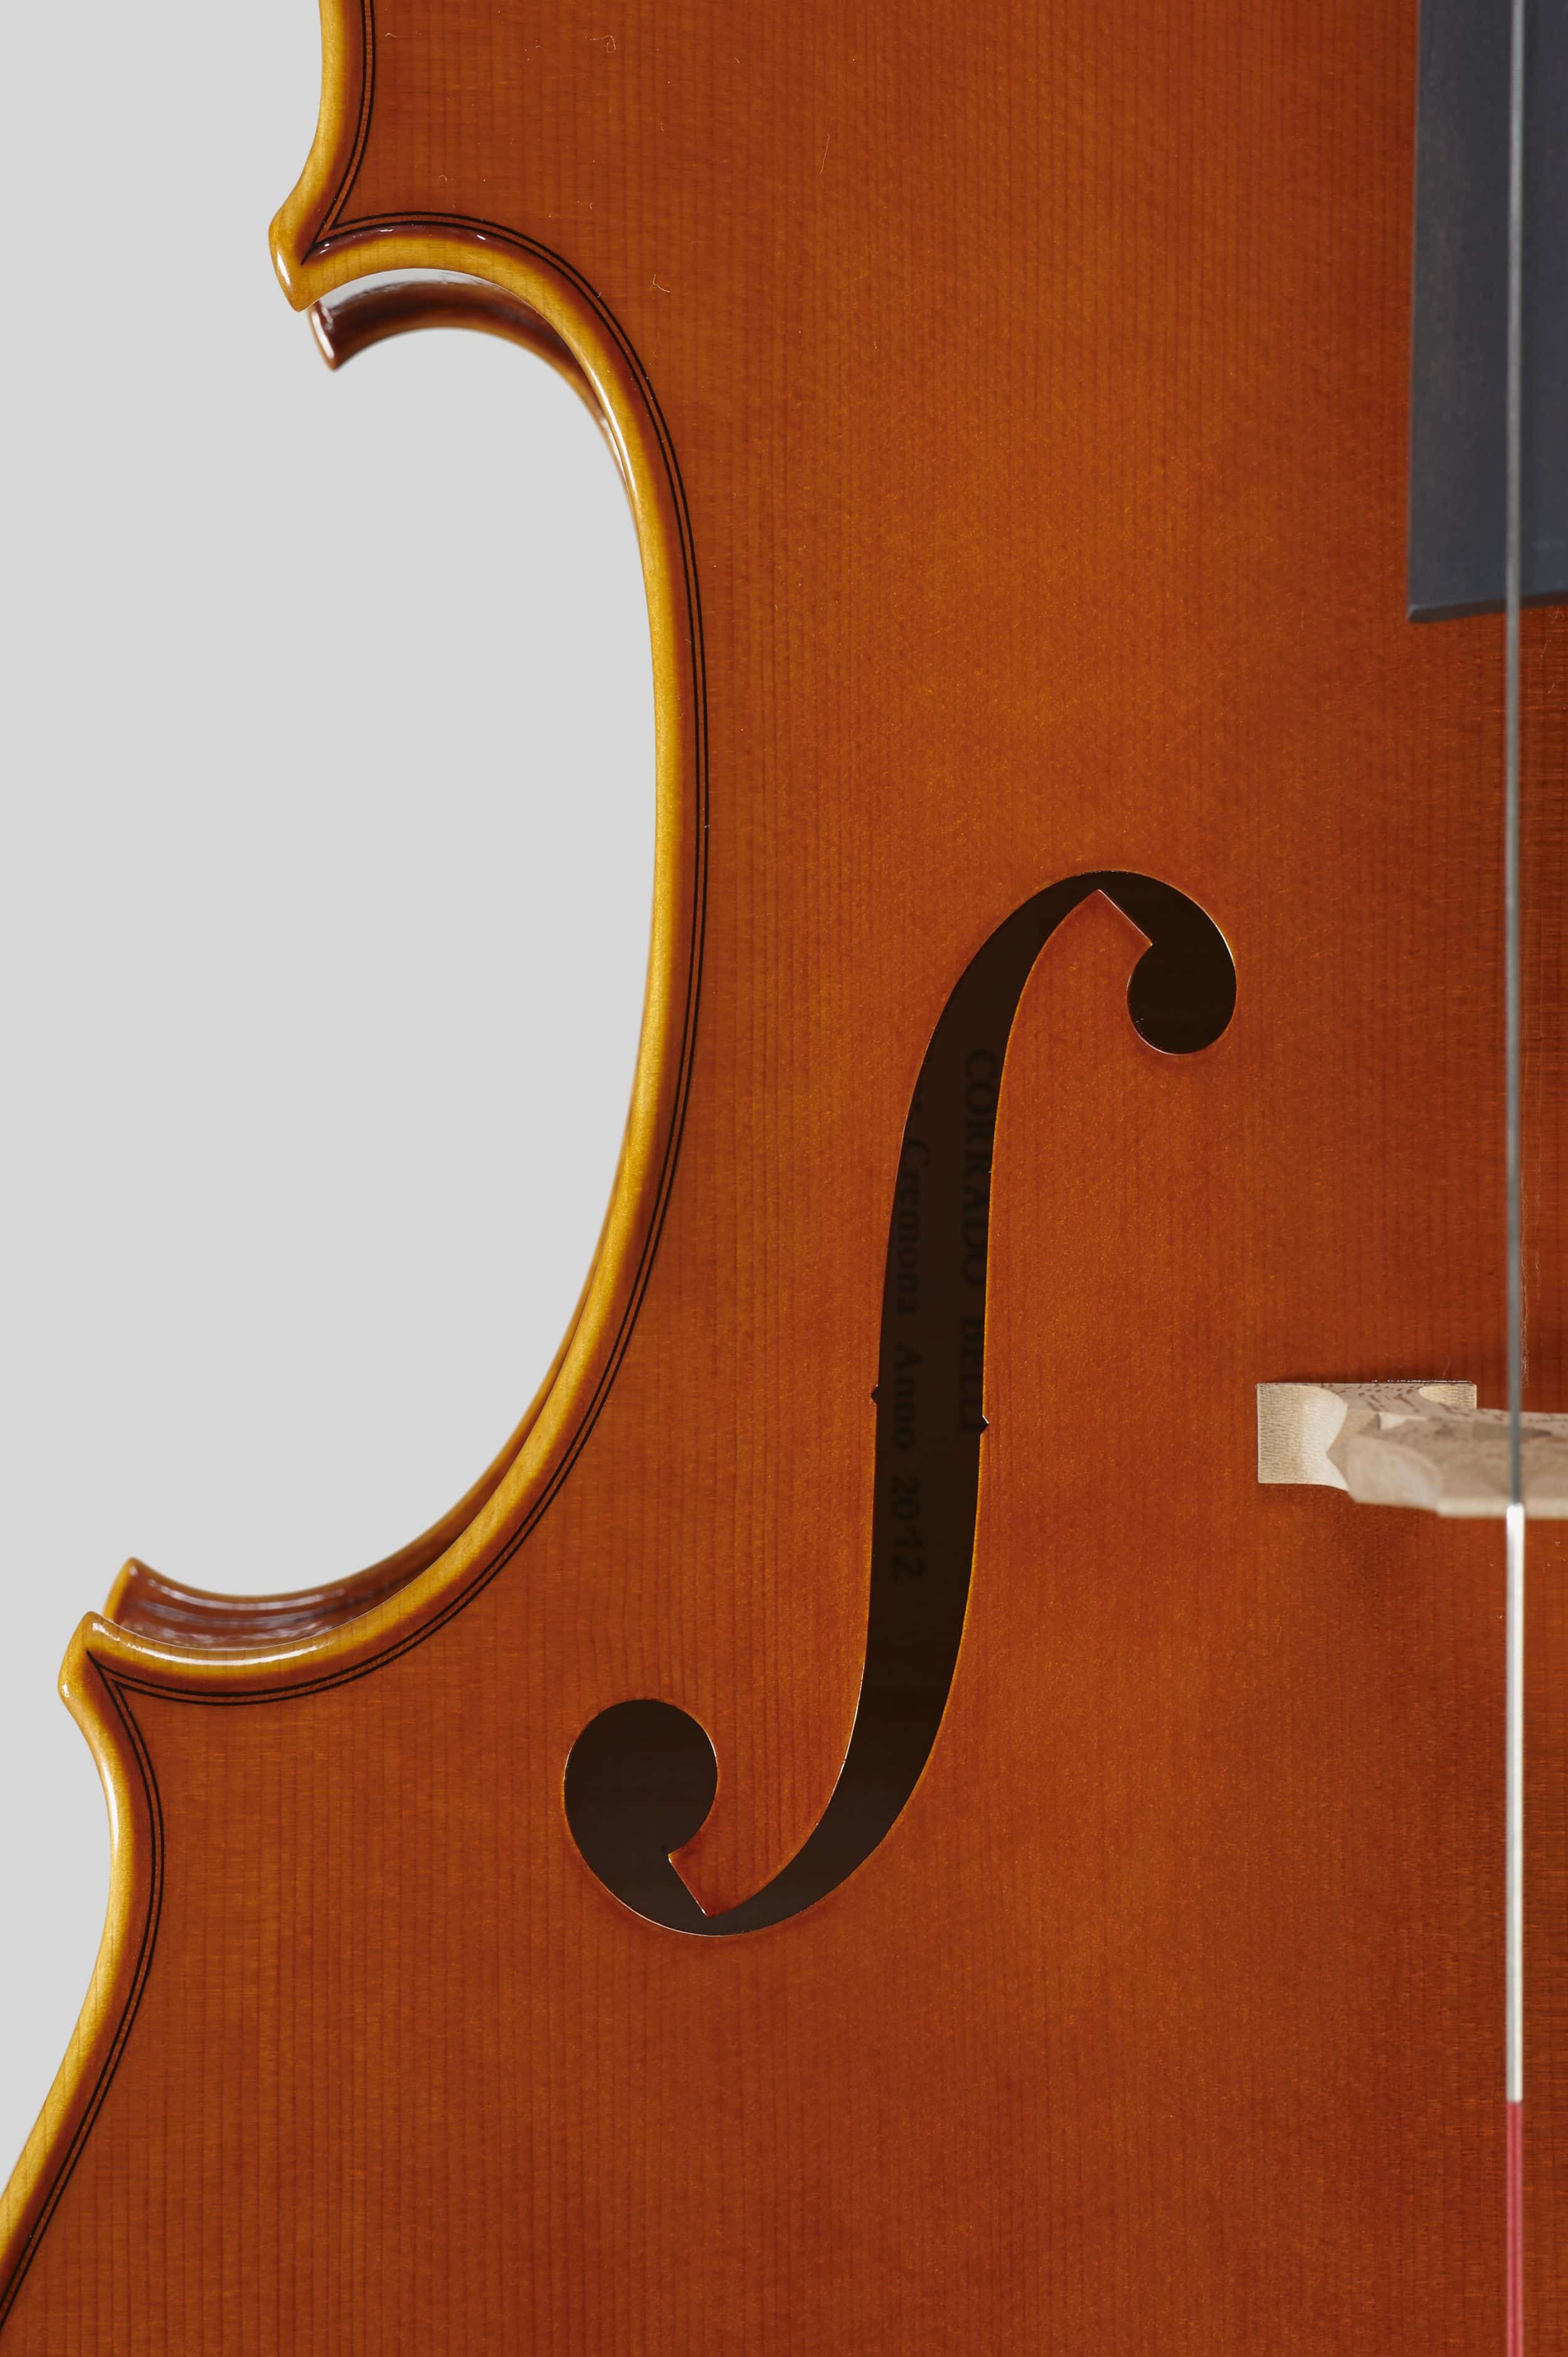 Anno 2012 – Violoncello modello stile A. Stradivari “forma B” - “Mara” 1711 - Effe